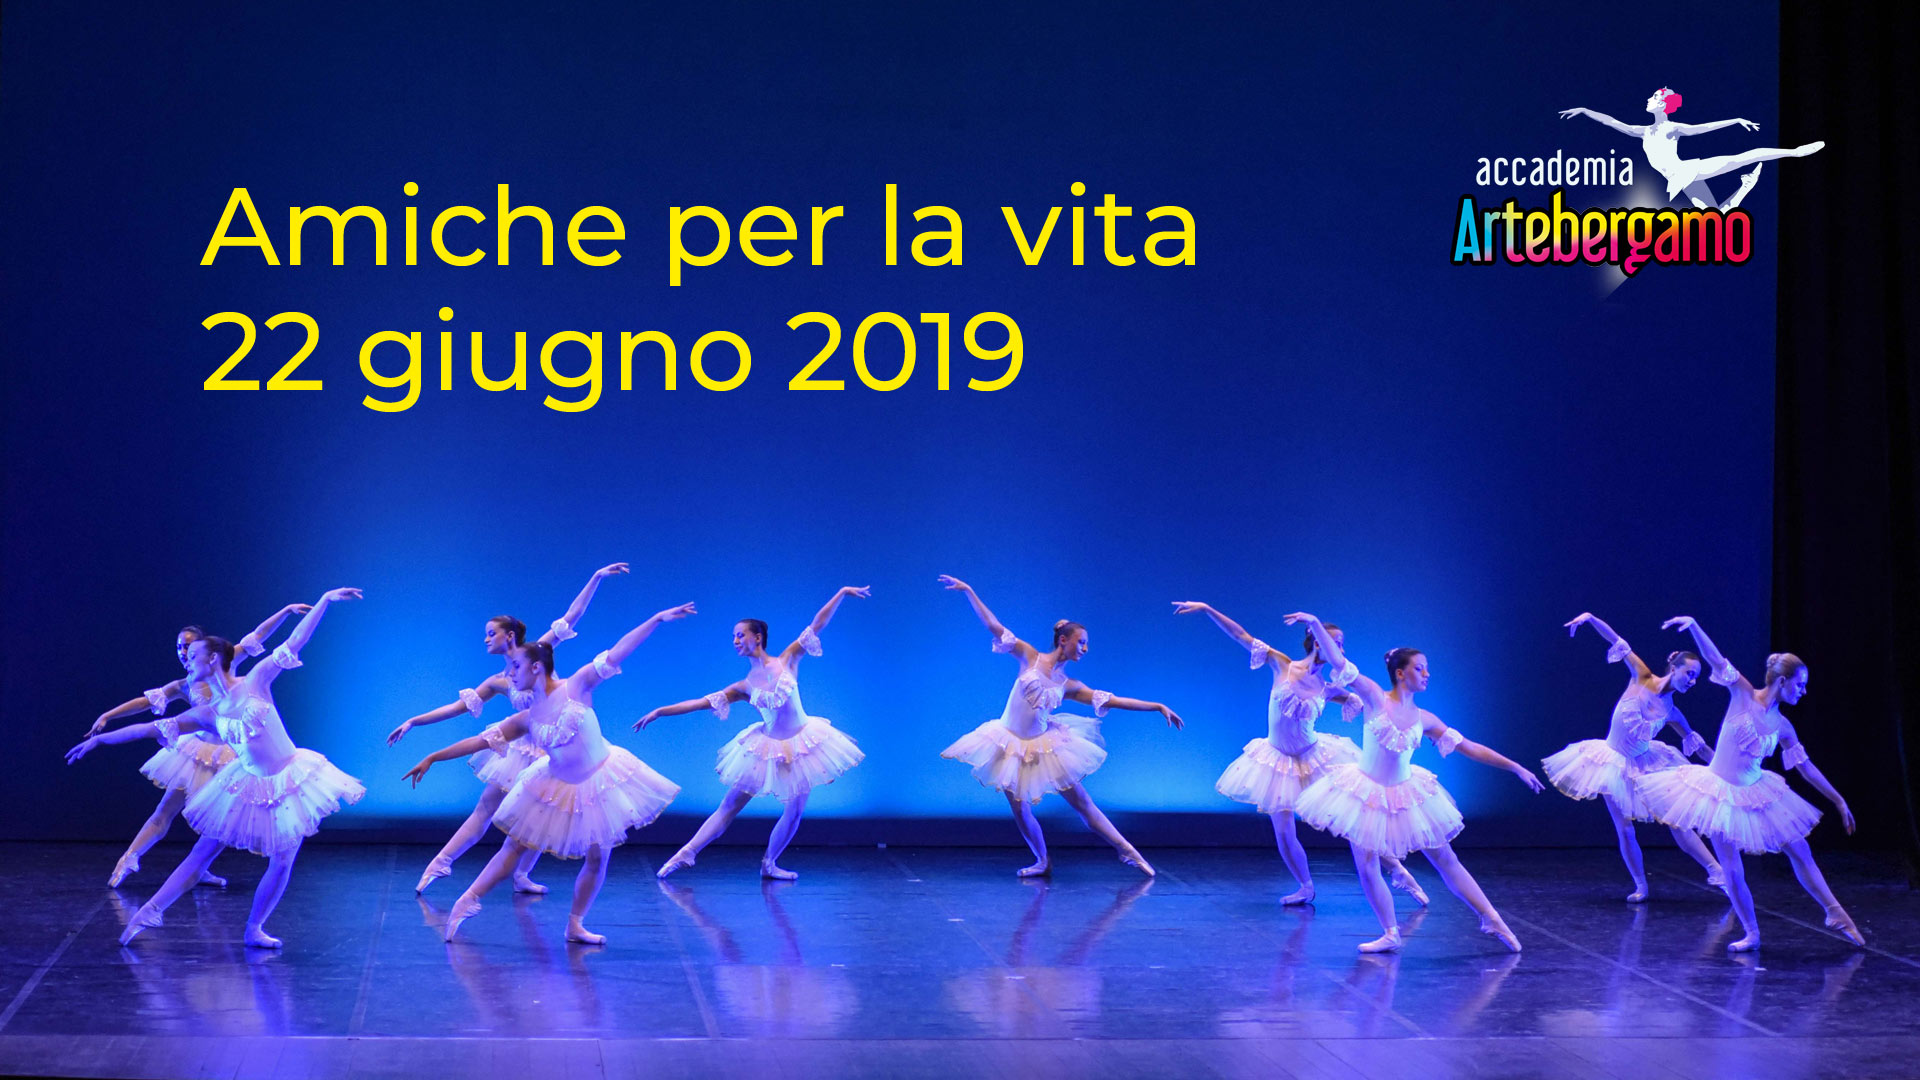 Accademia Arte Bergamo - Amiche per la vita 2019